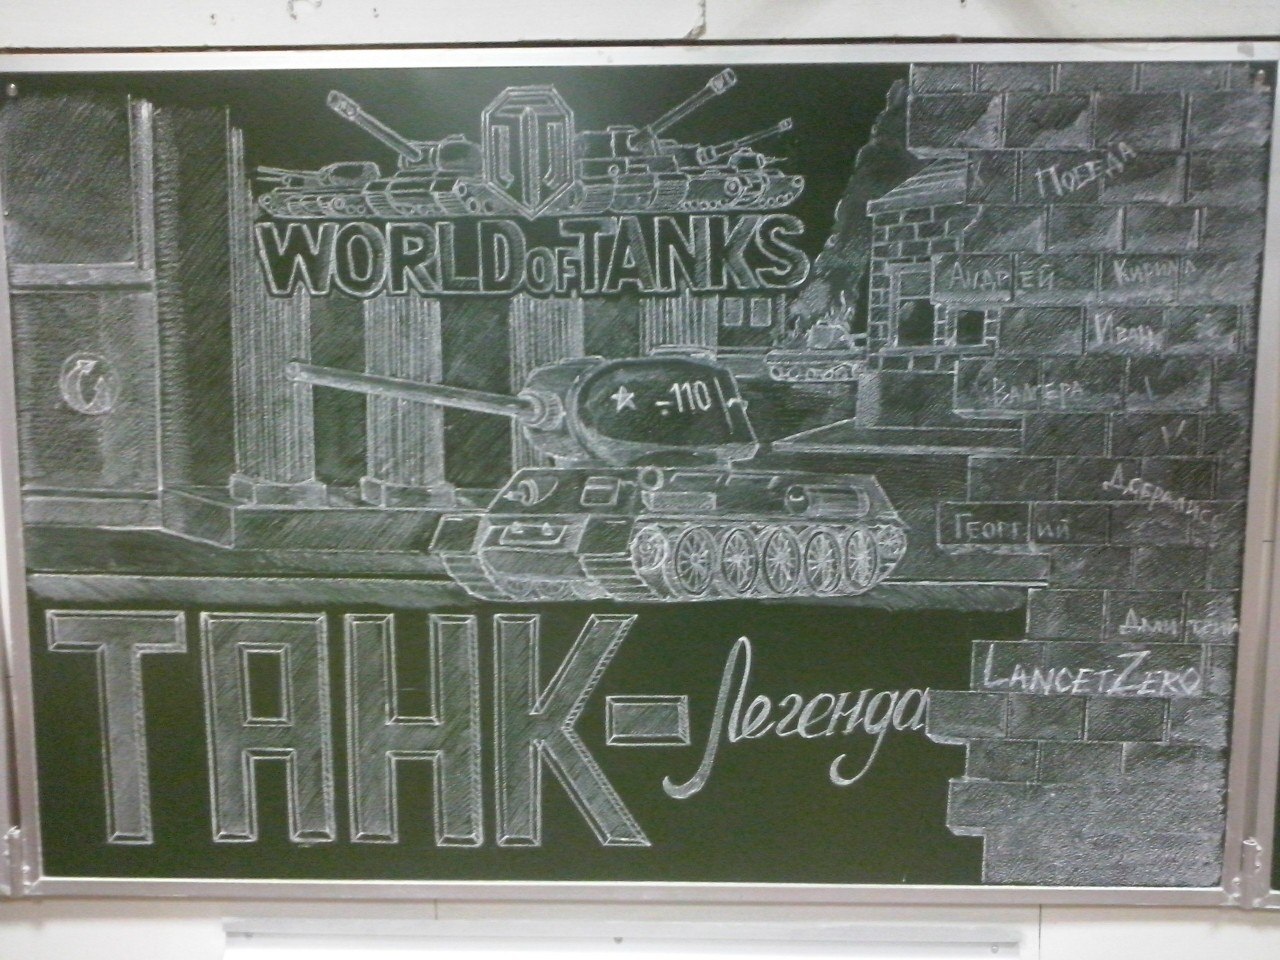 Výsledky školní soutěže "Tank na tabuli"